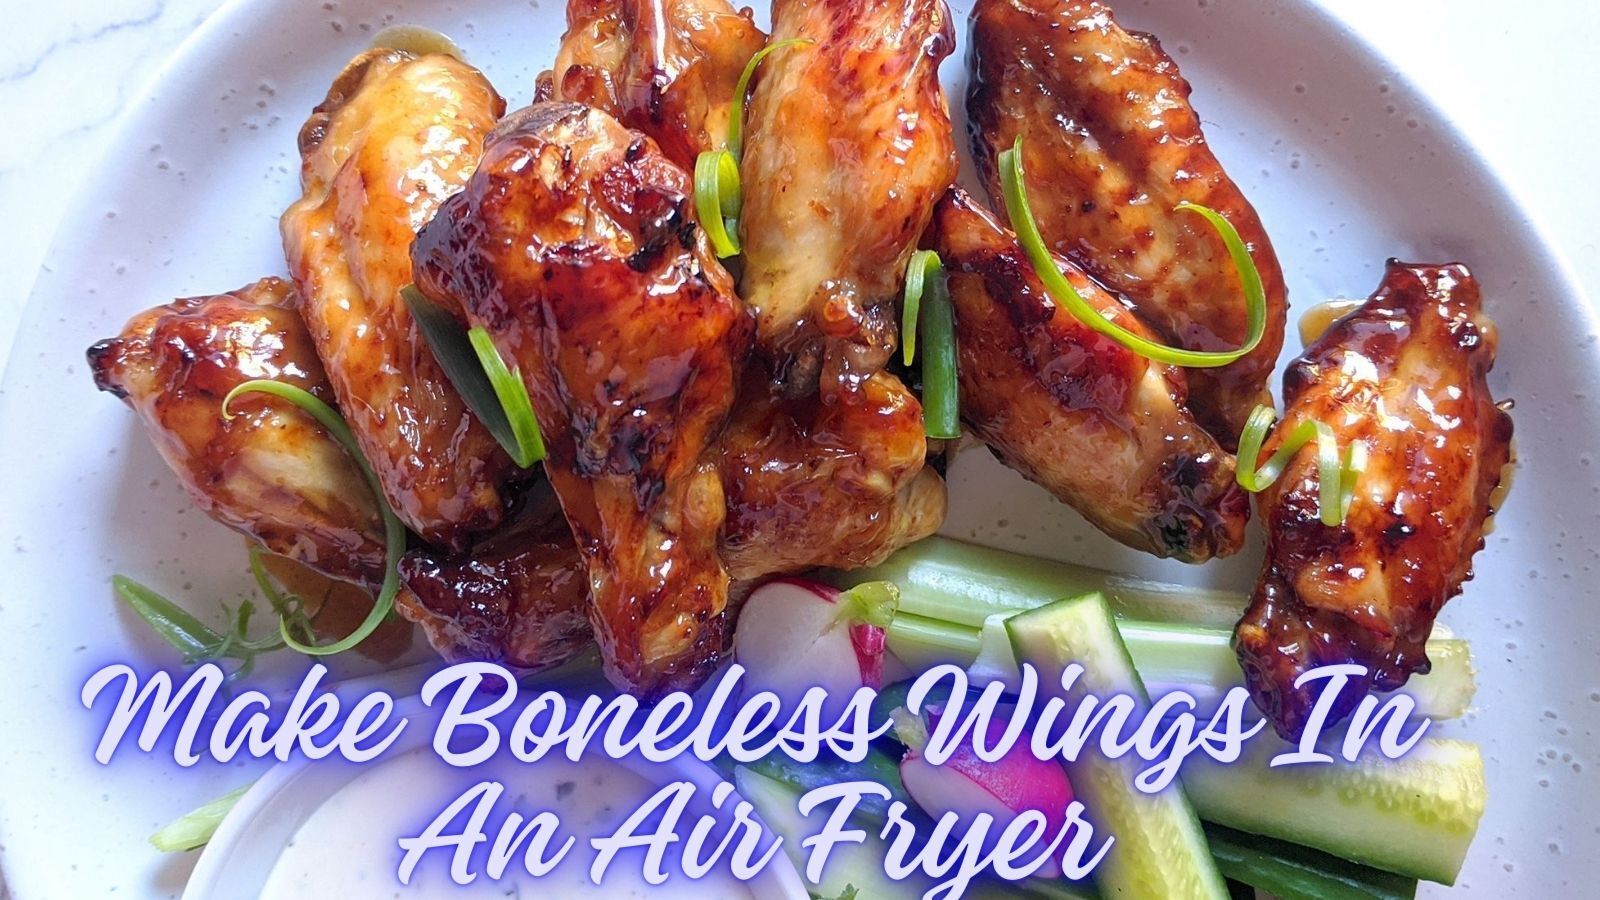 How To Make Boneless Wings In Air Fryer